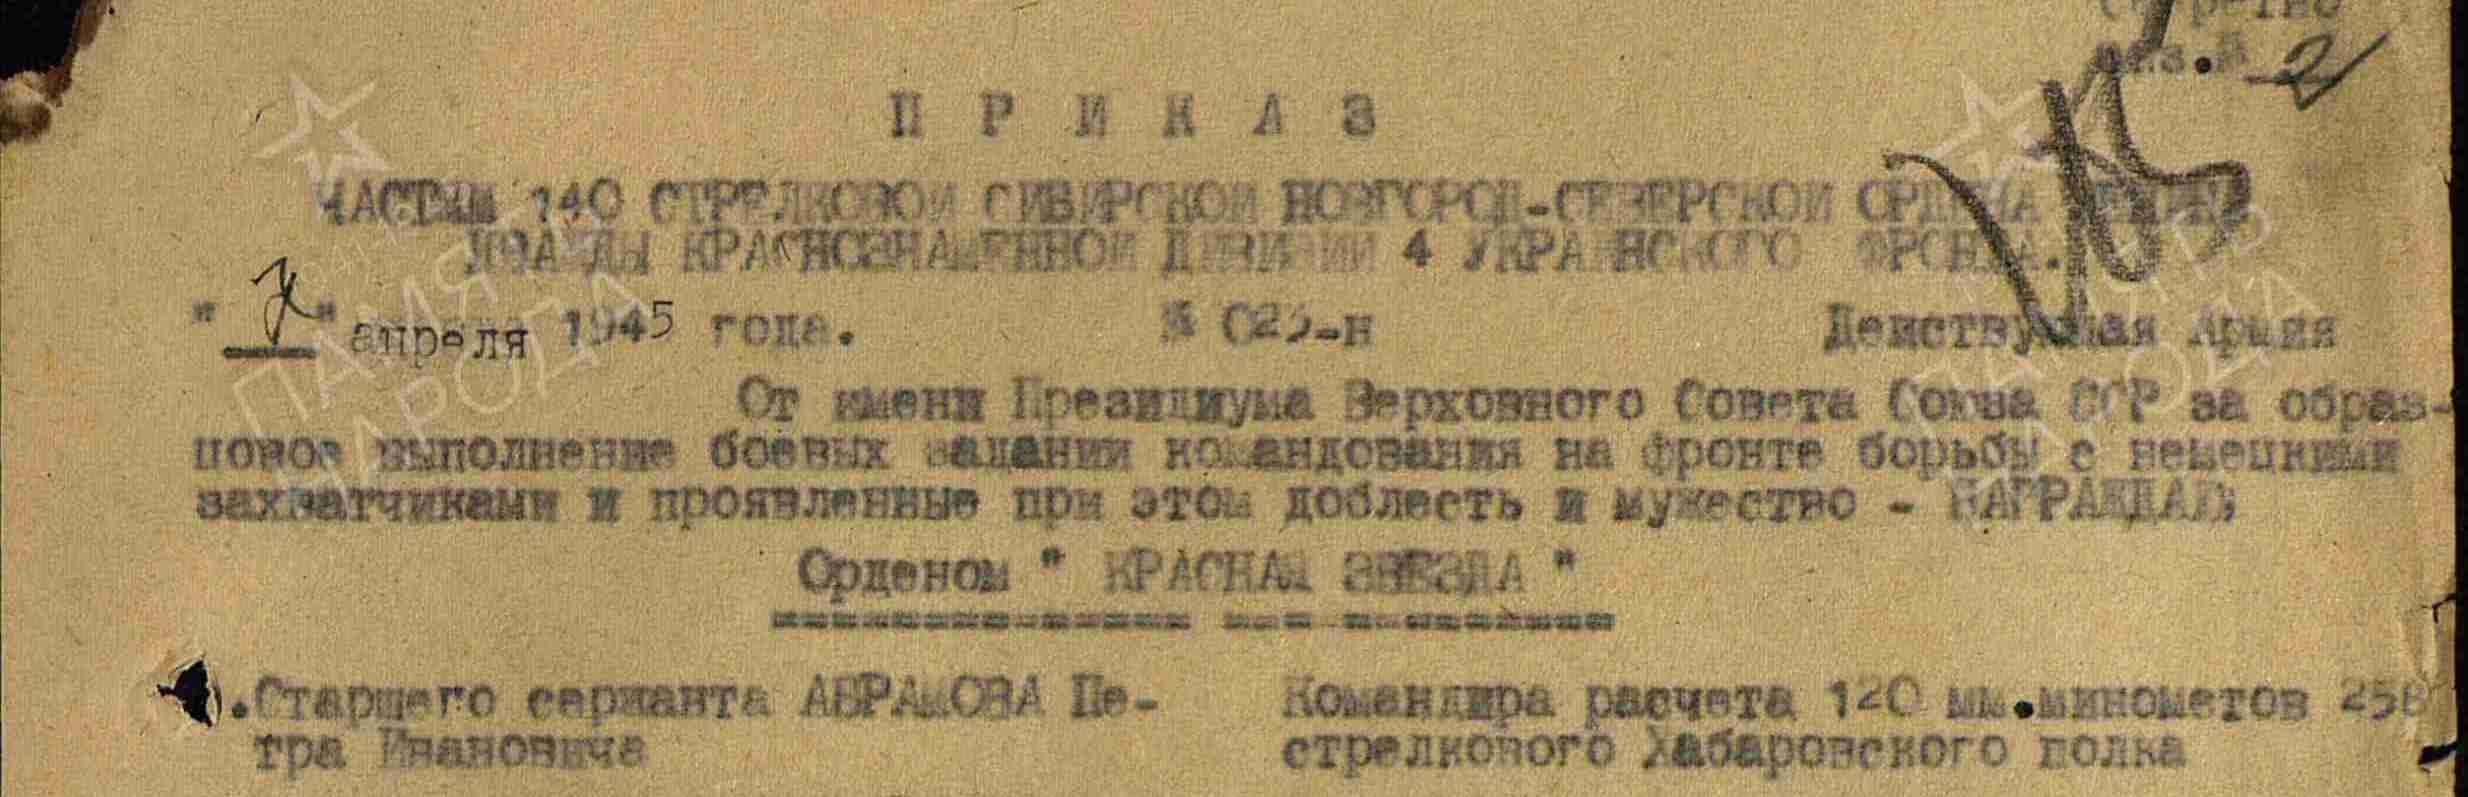 Приказ о награждении Петра Ивановича Абрамова орденом «Красная Звезда» от 7 апреля 1945 года за мужество и доблесть под Бзе-Гурне.